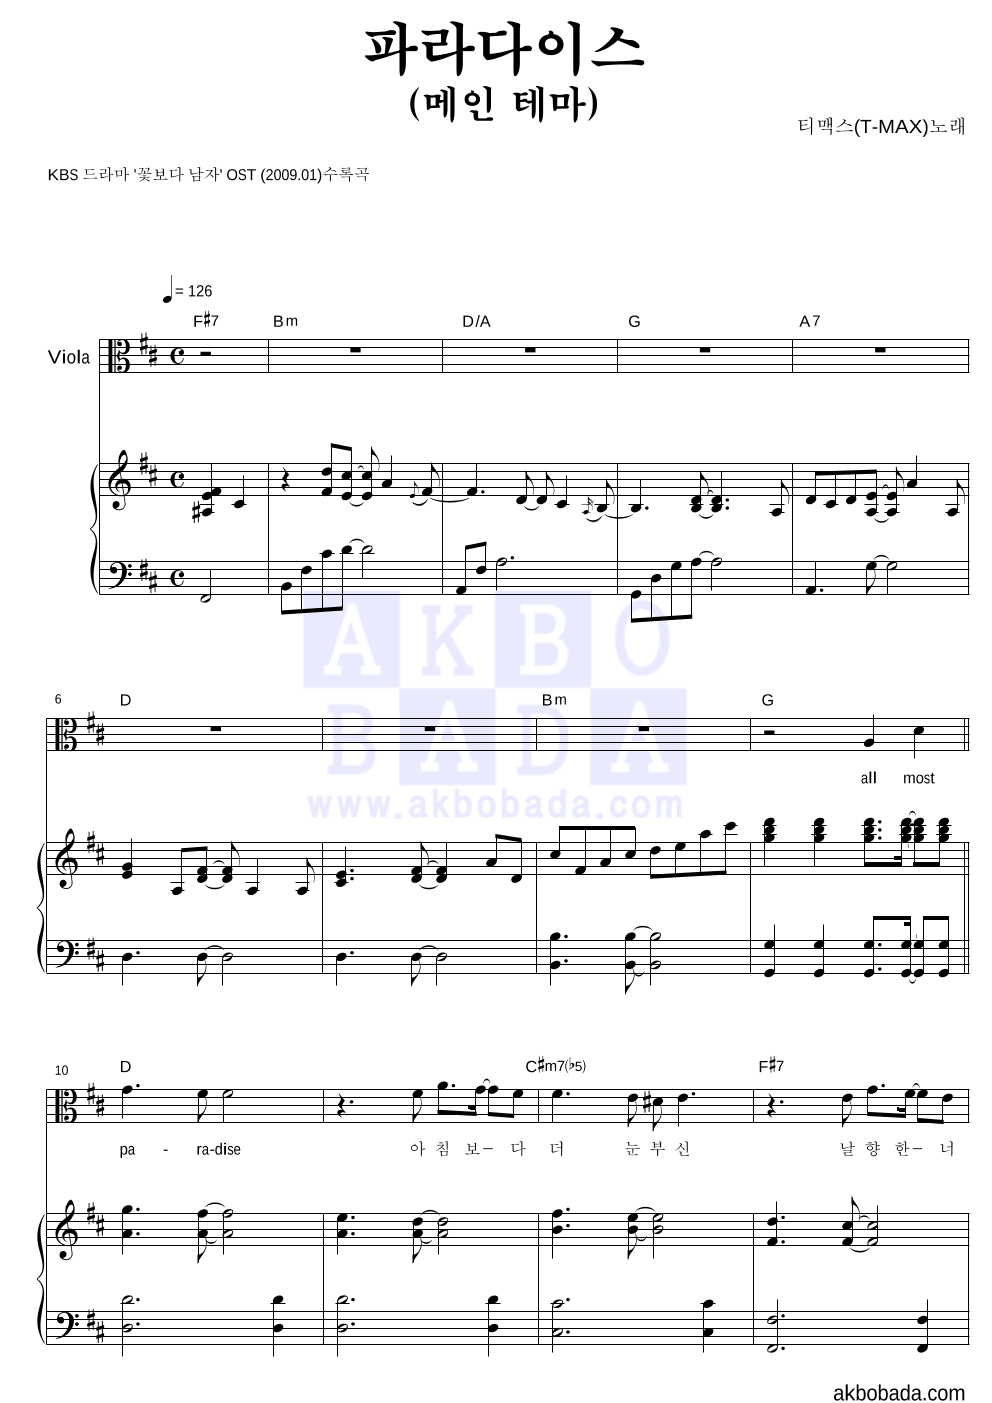 티맥스 - 파라다이스 (메인 테마) 비올라&피아노 악보 